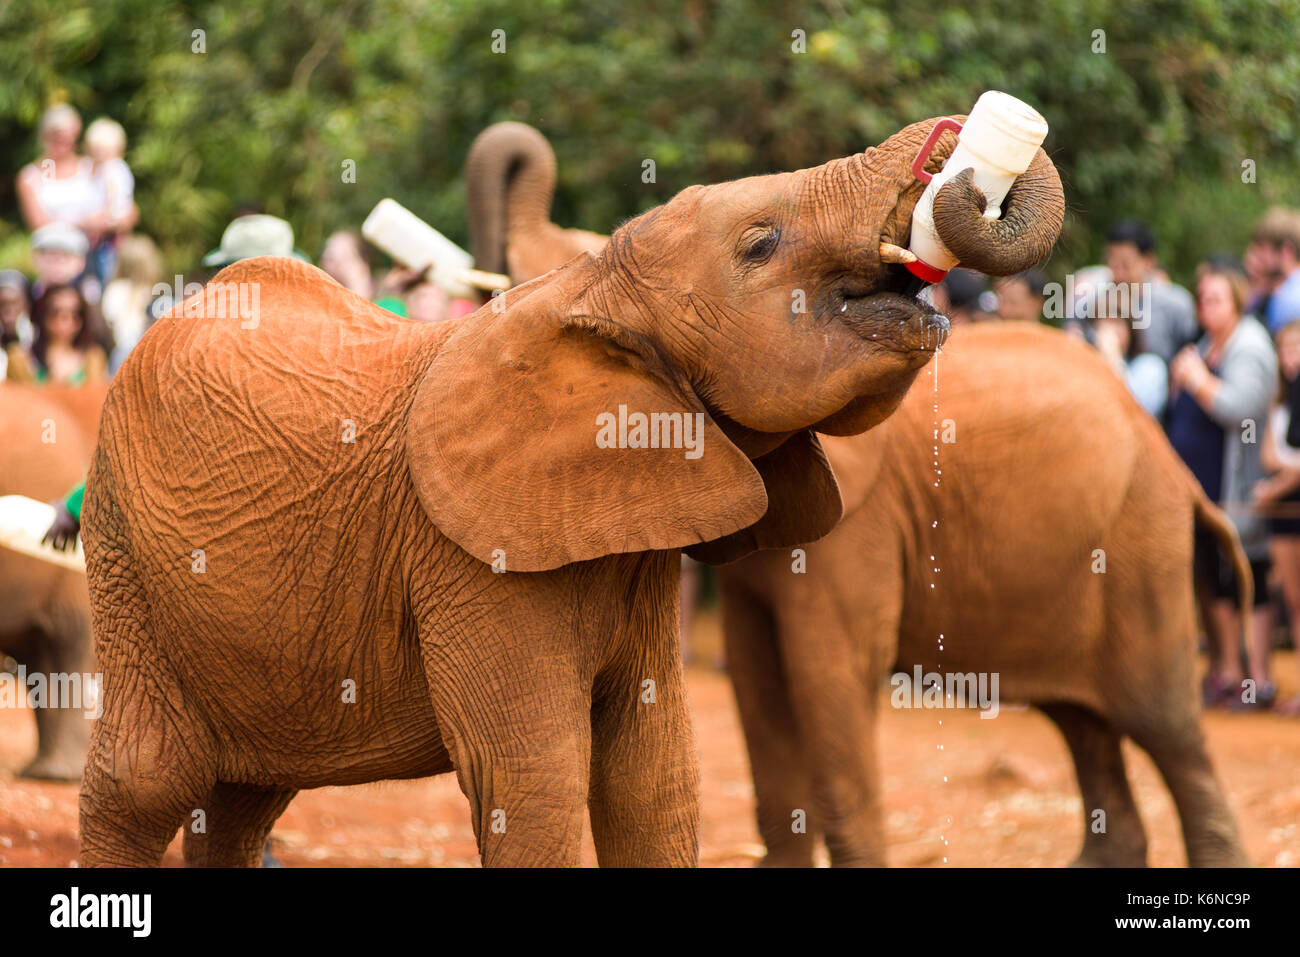 Juvenile baby African bush elephant (Loxodonta africana) during feeding time at David Sheldrick's Elephant Orphanage, Nairobi, Kenya Stock Photo